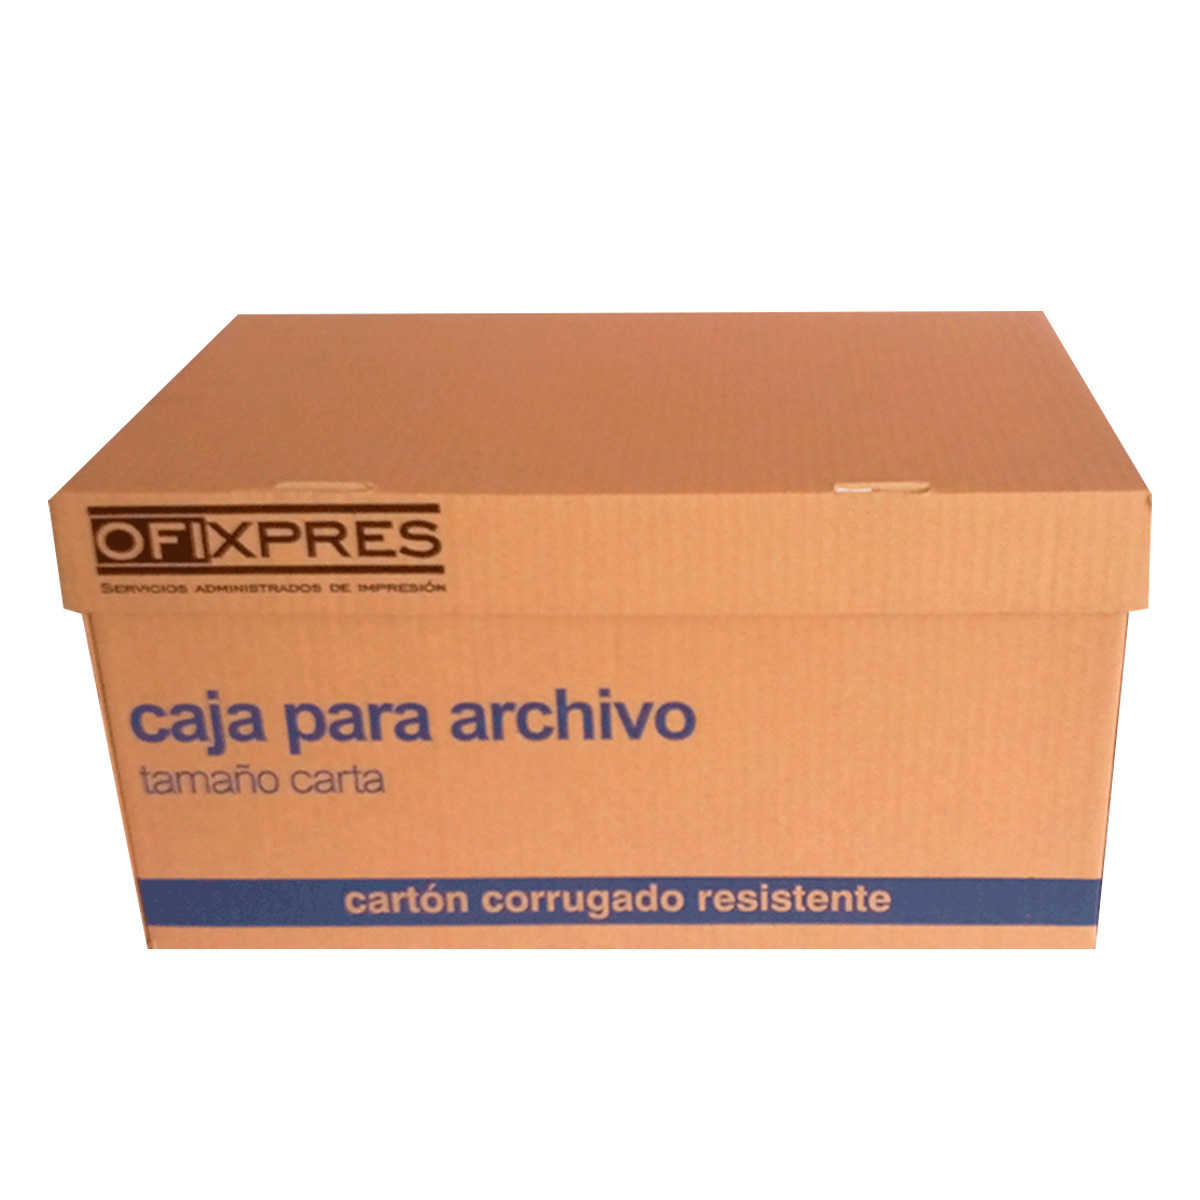 Caja para Archivo Carta Ofixpres / Cartón / Café